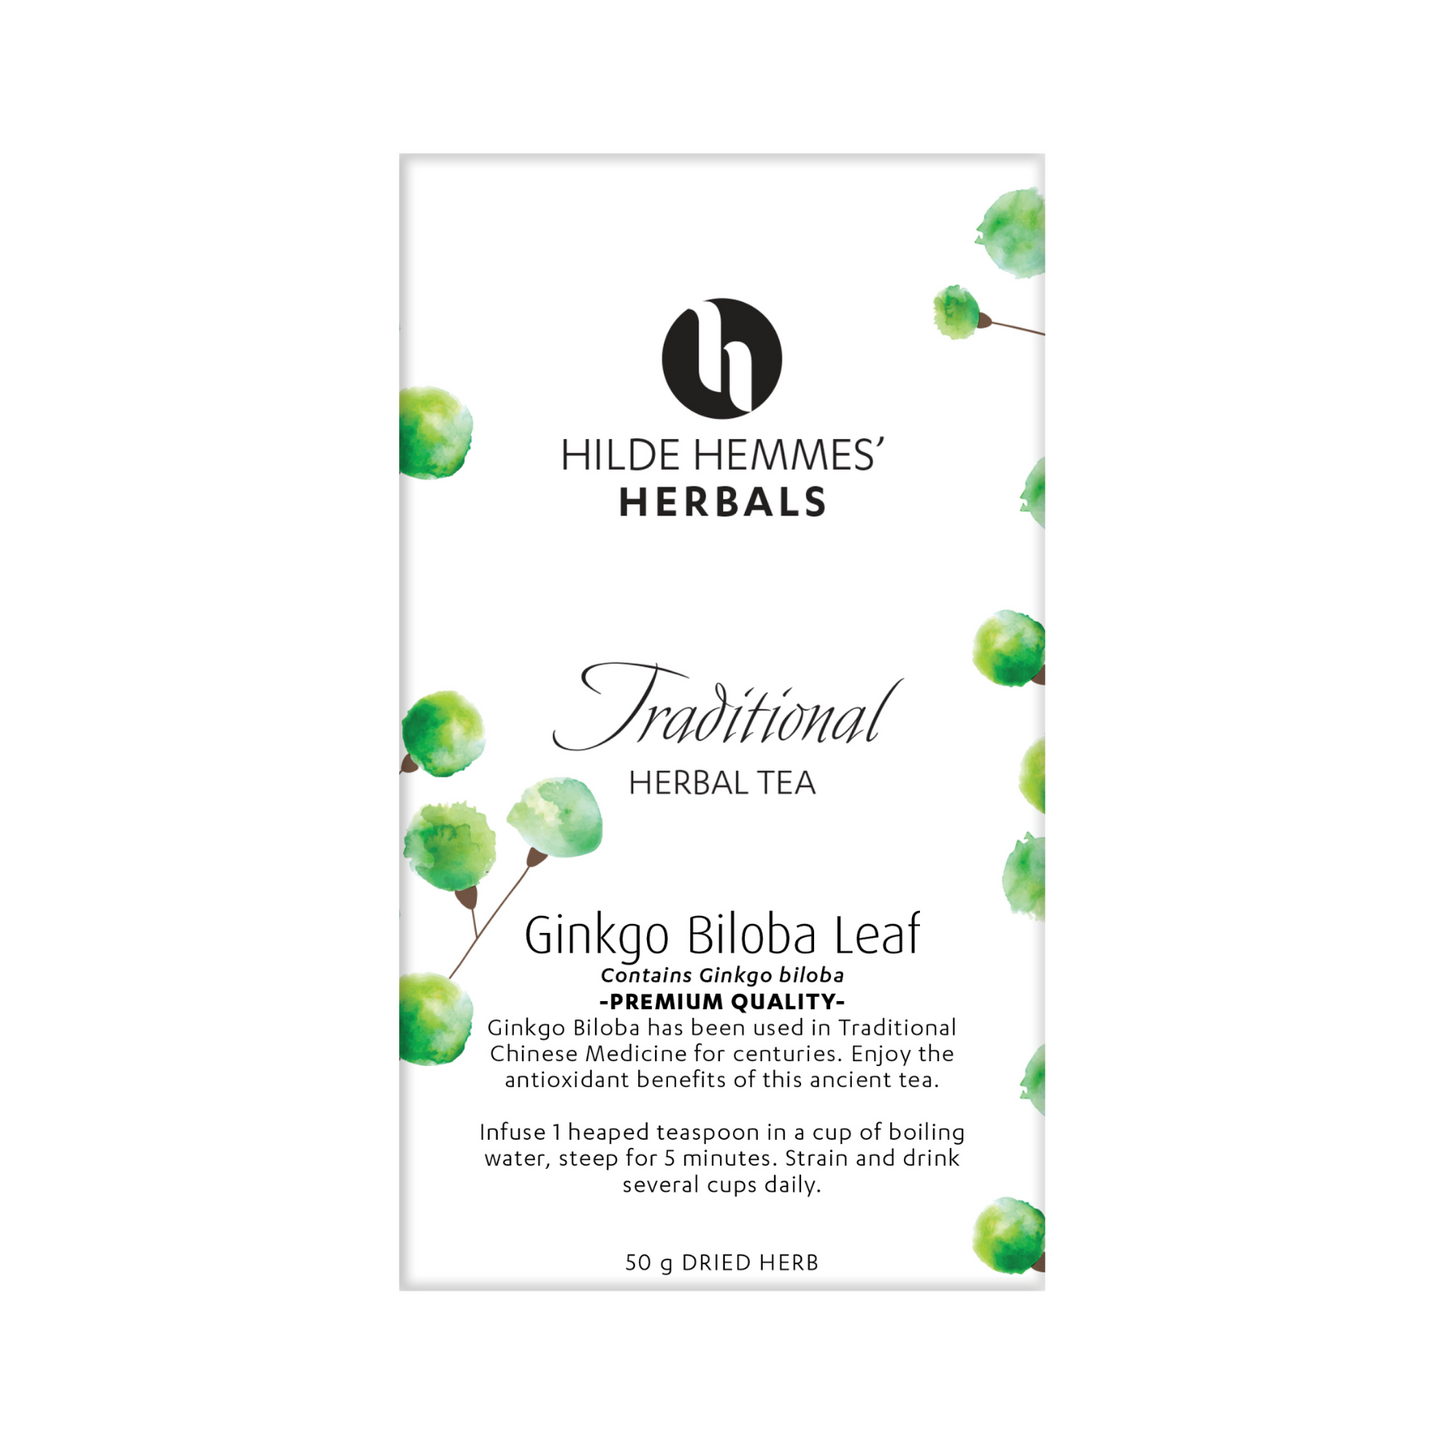 Hilde Hemmes' Herbals Ginkgo Biloba Leaf 50g, Loose Leaf